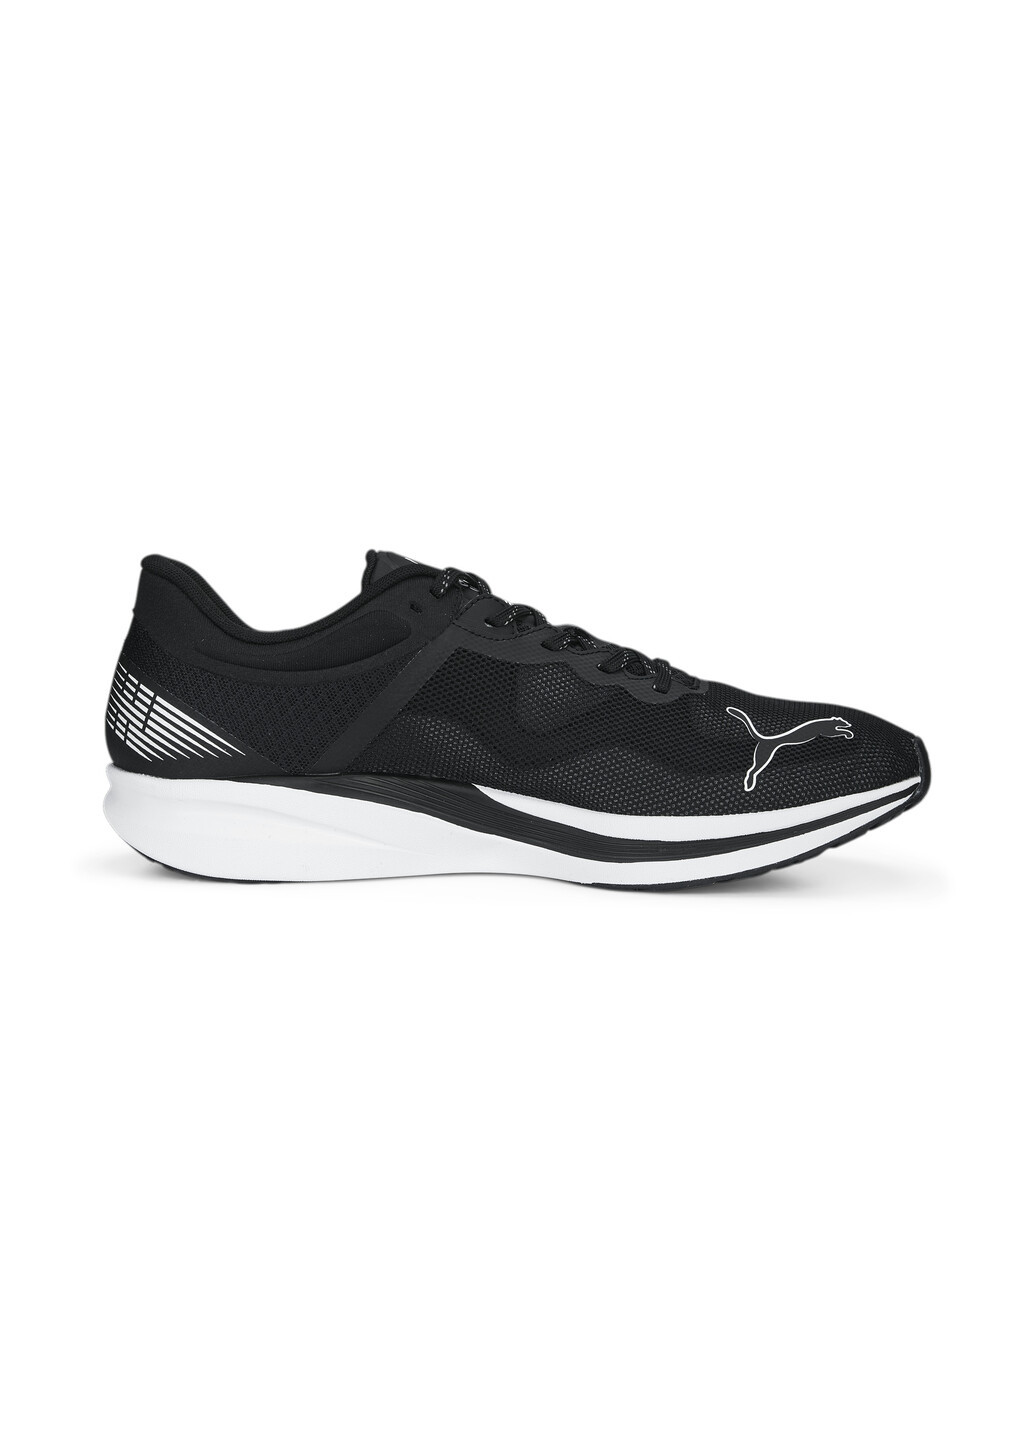 Черные всесезонные кроссовки redeem profoam running shoes Puma